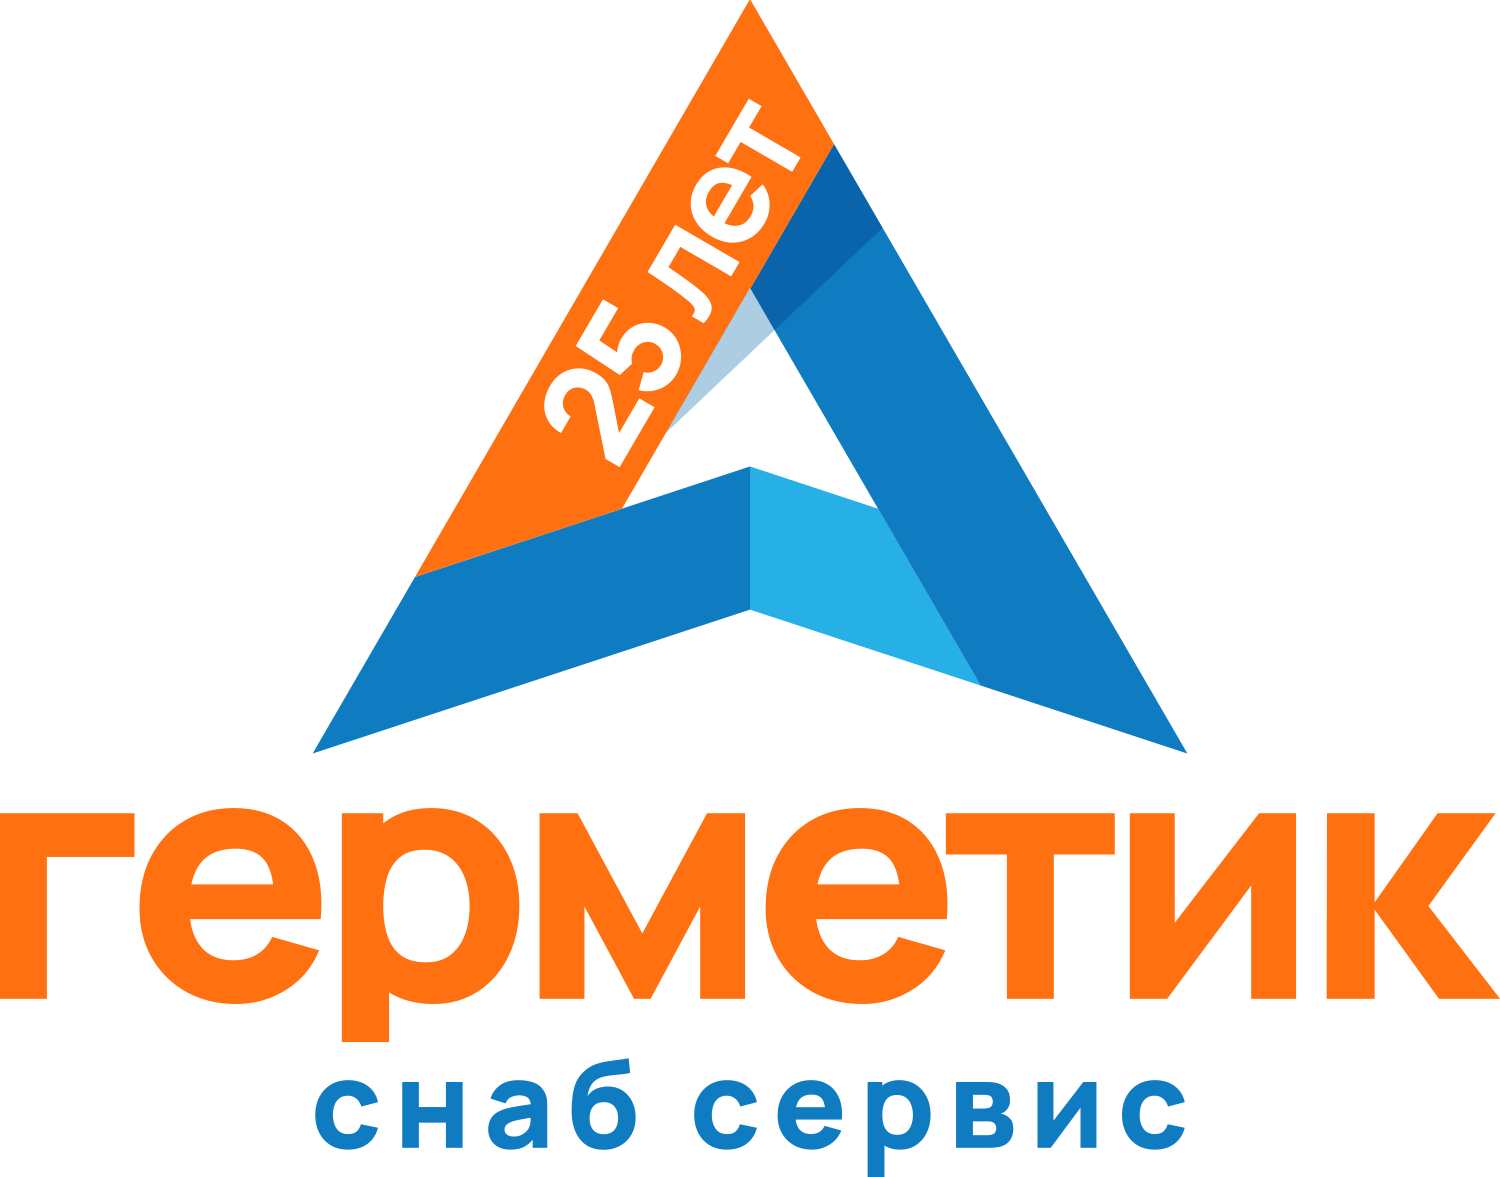 germetic_logo